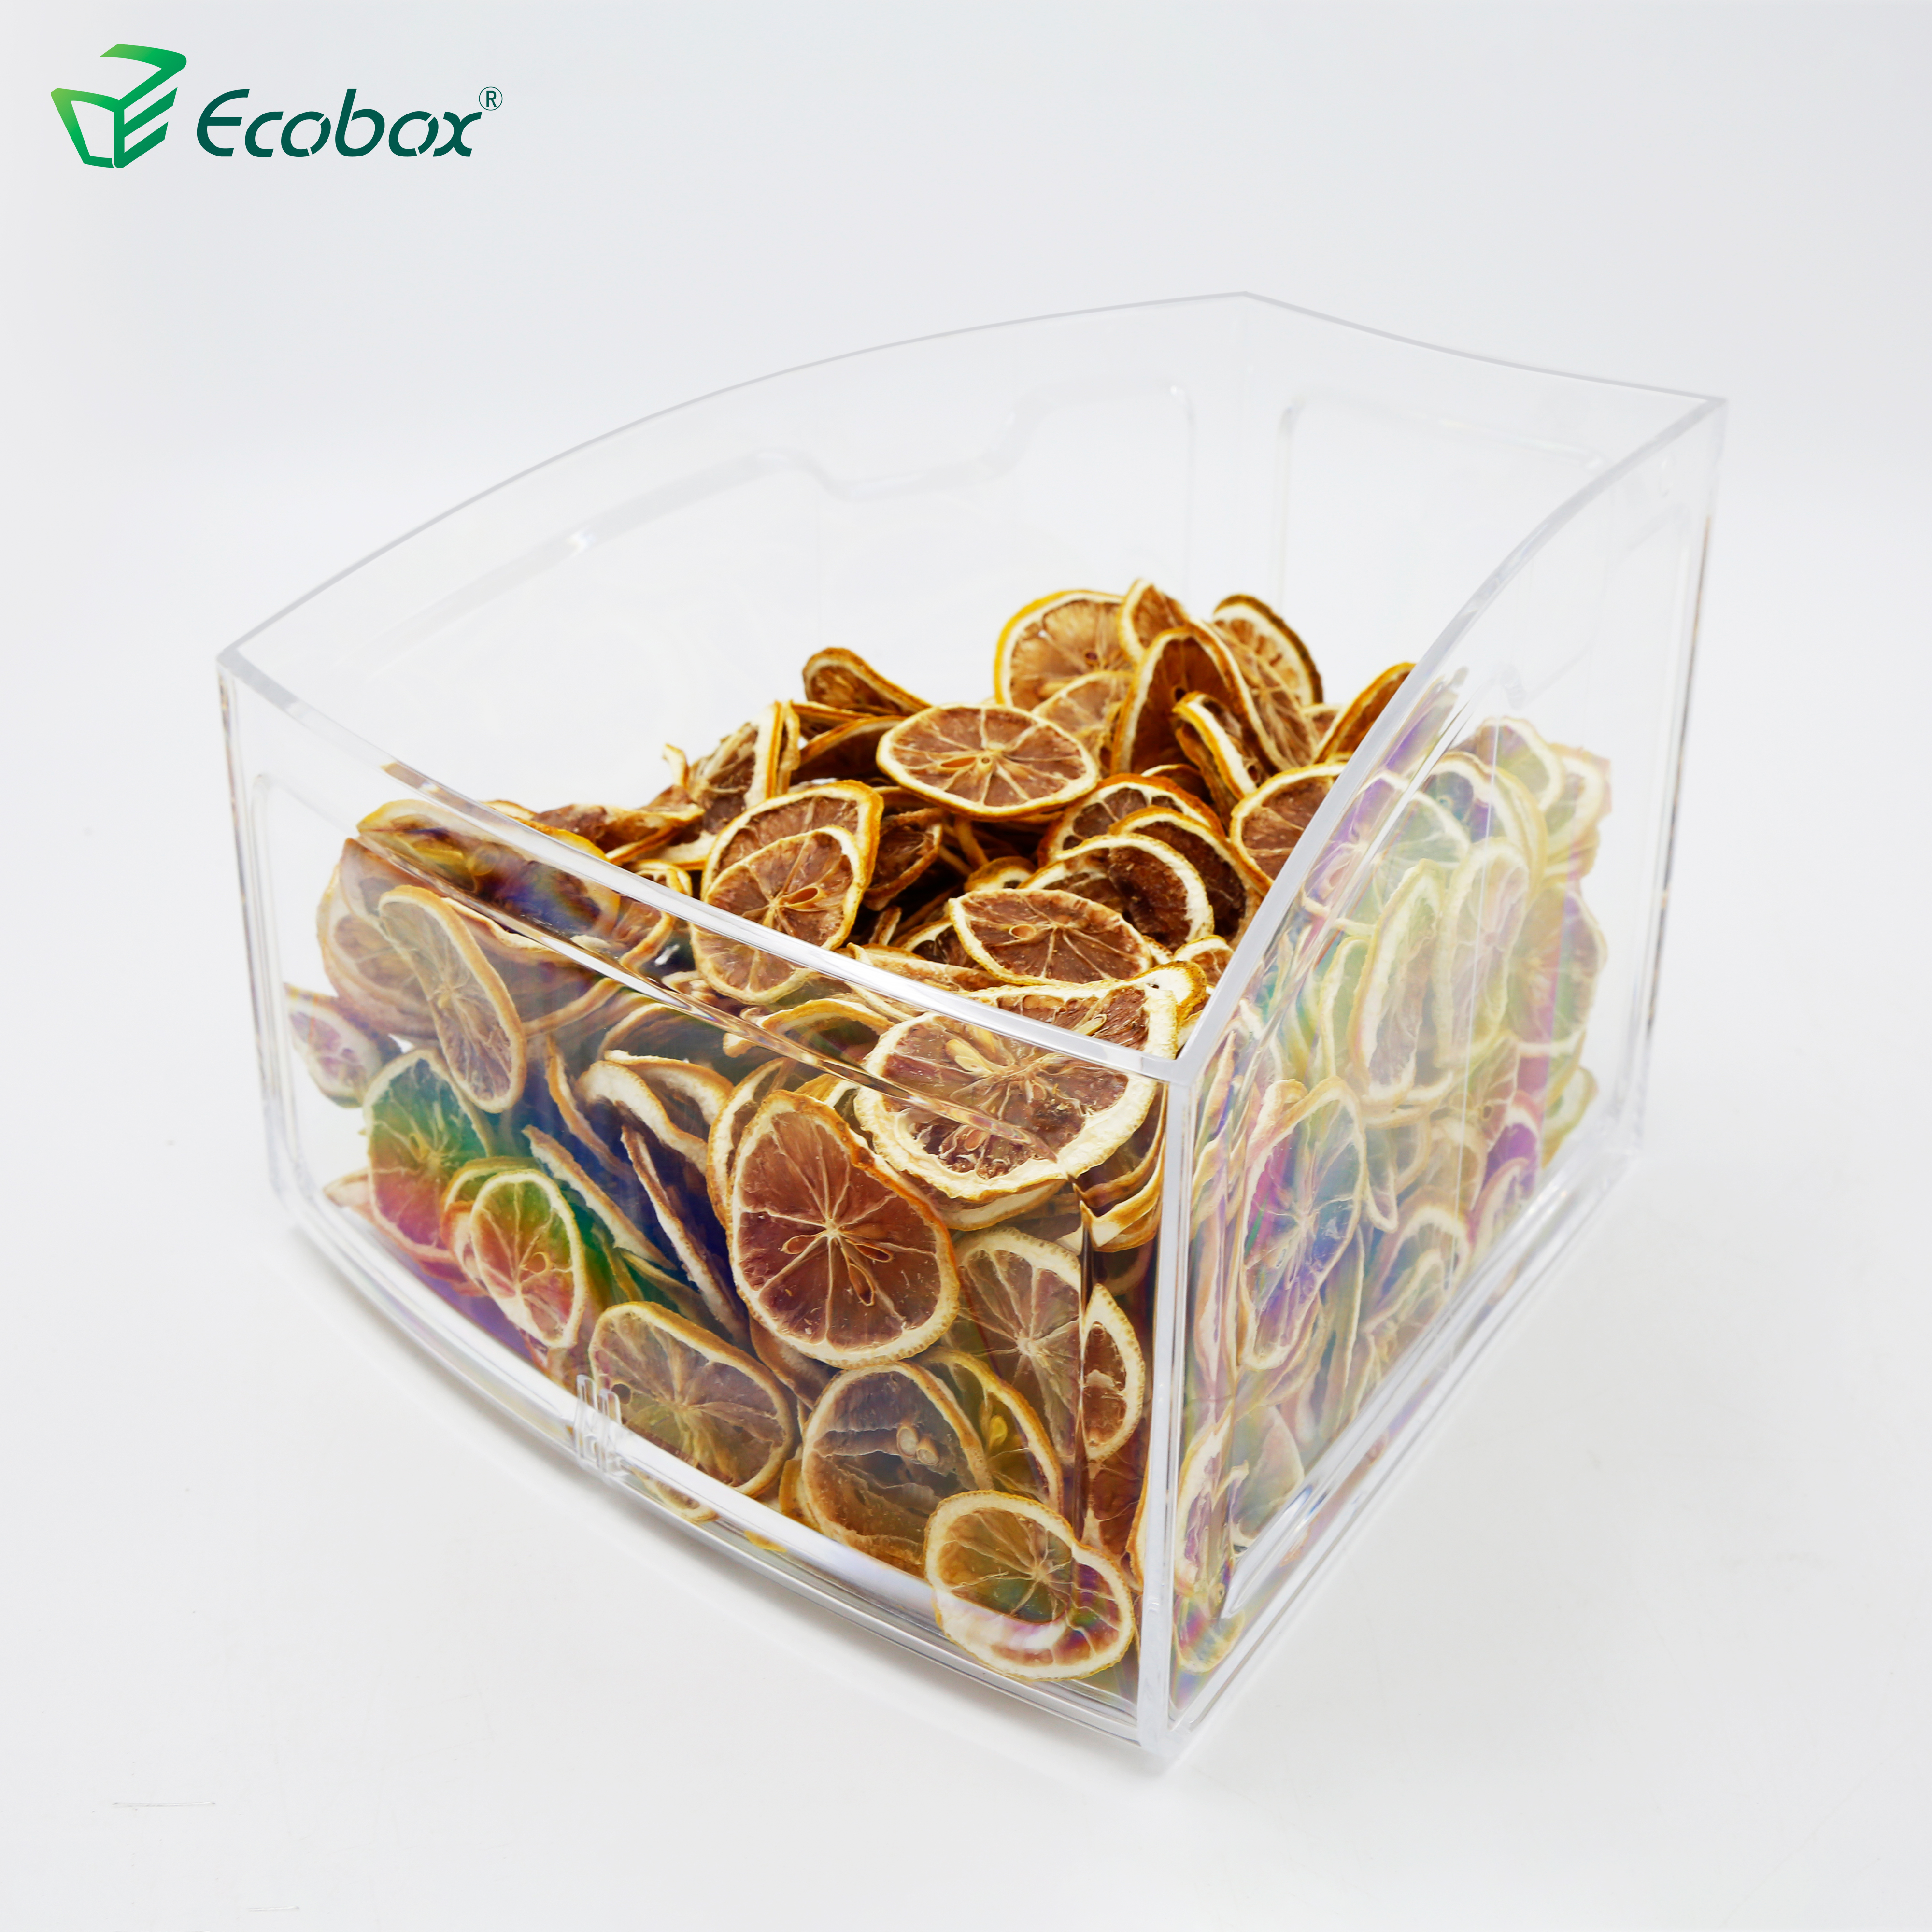 Ecobox SPH-010 Bogenförmiger kleiner Lebensmittelbehälter für Supermarktregale